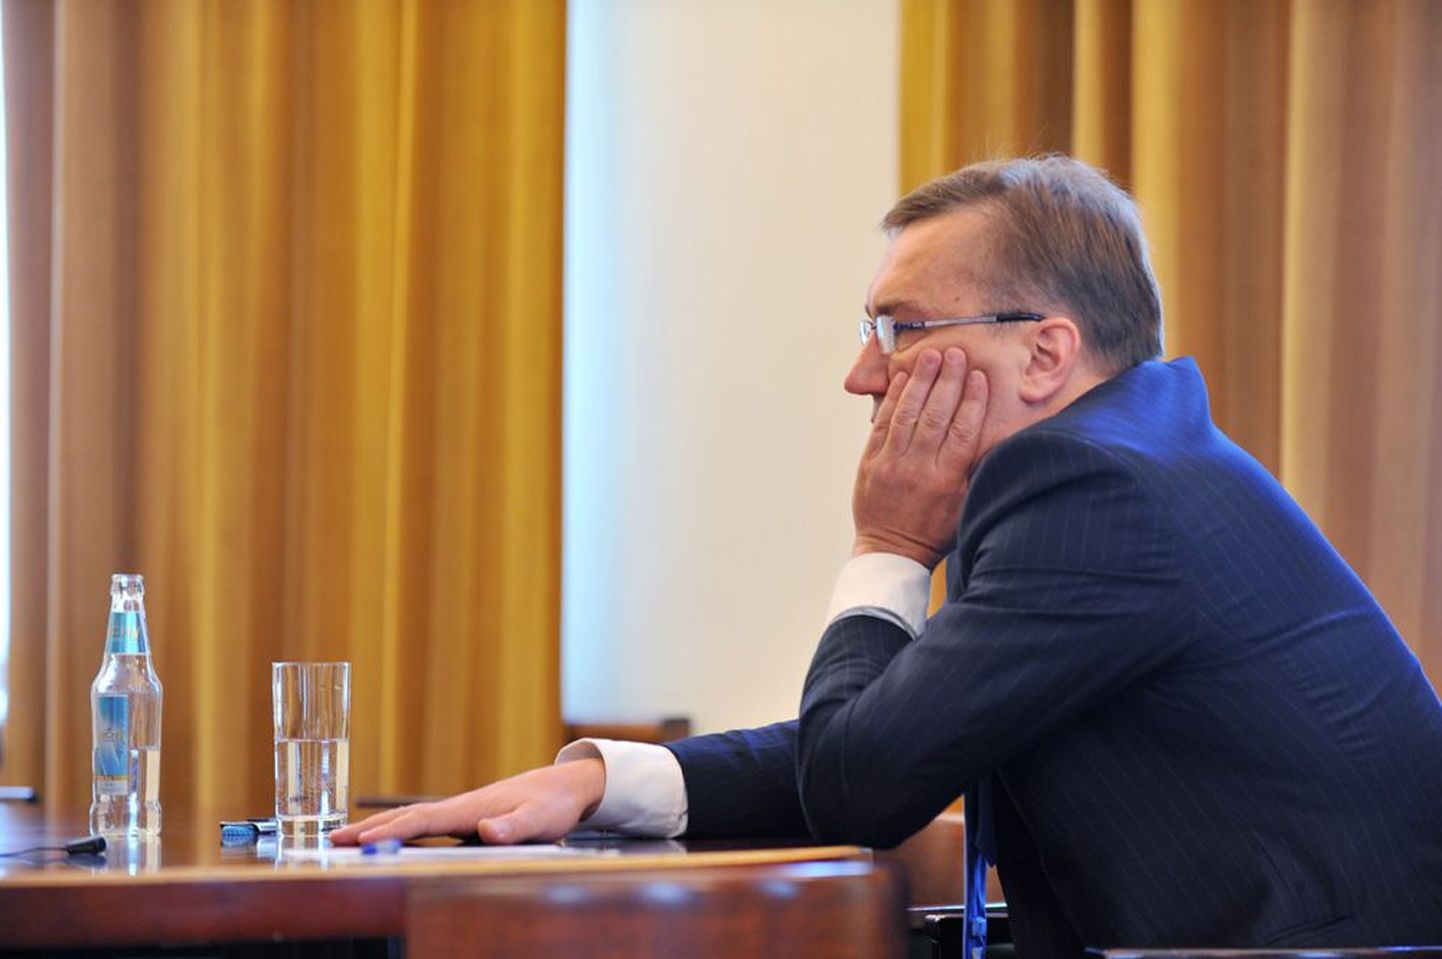 Министр экономики Юхан Партс затрудняется сказать, является ли ходатайство Eesti Energia о повышении тарифов обоснованным, это в компетенции Департамента конкуренции.